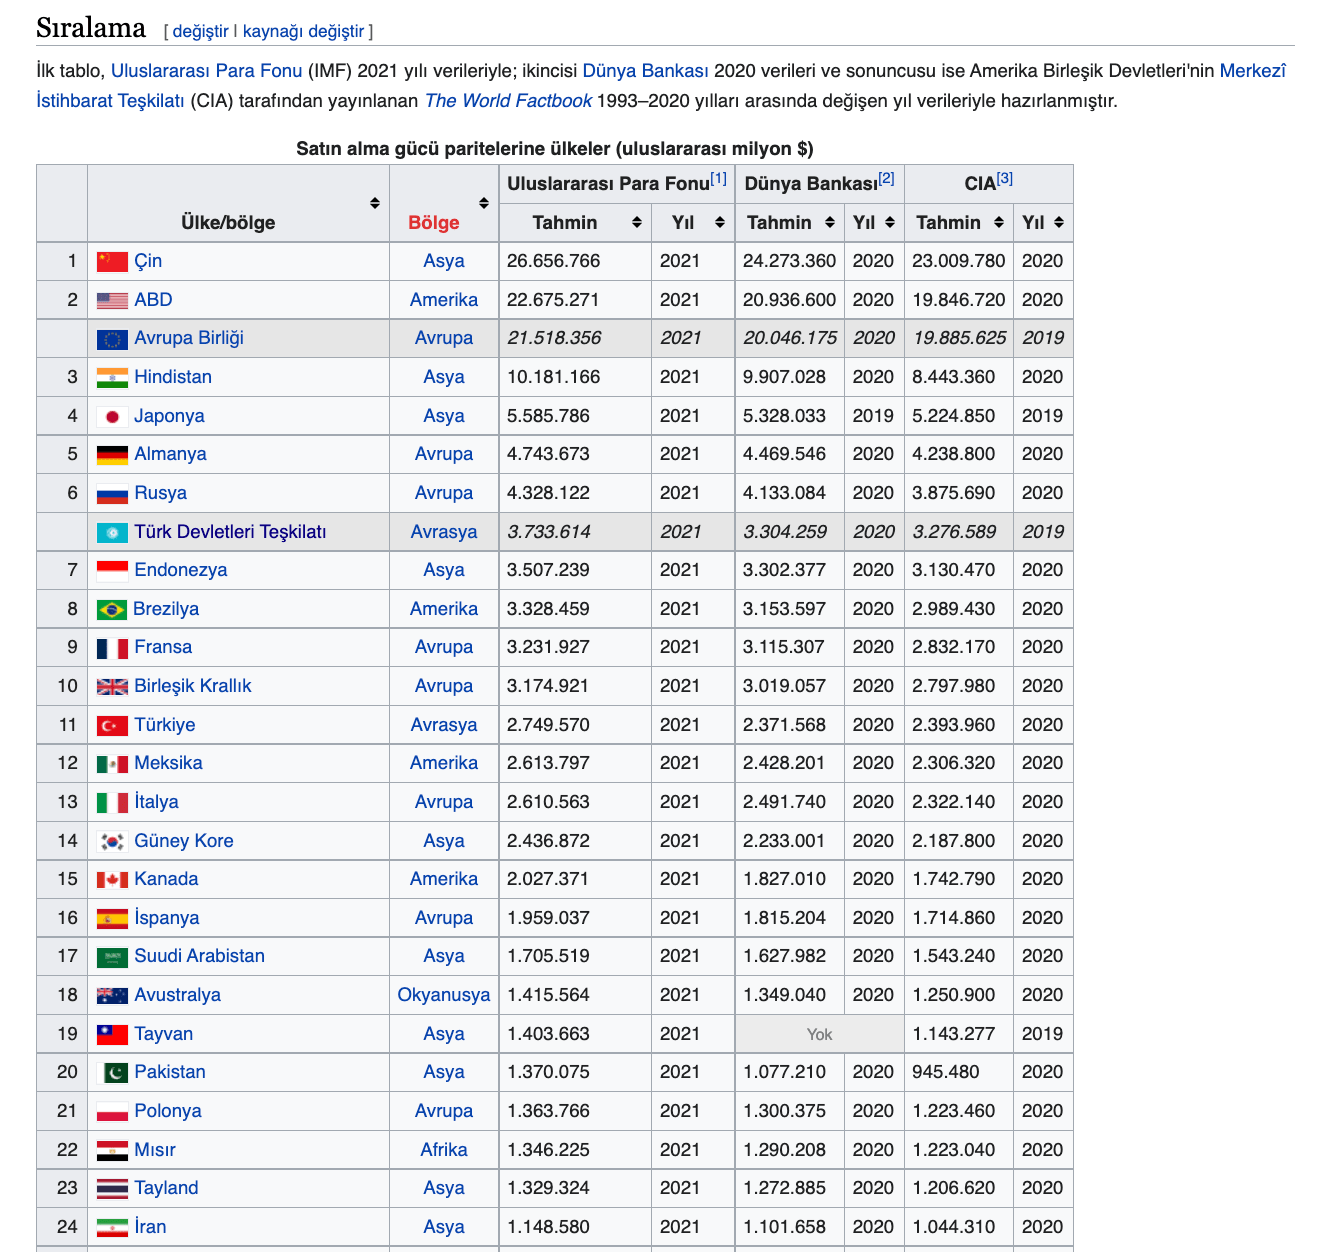 wikipedia ulkelerin satin alma paritesi